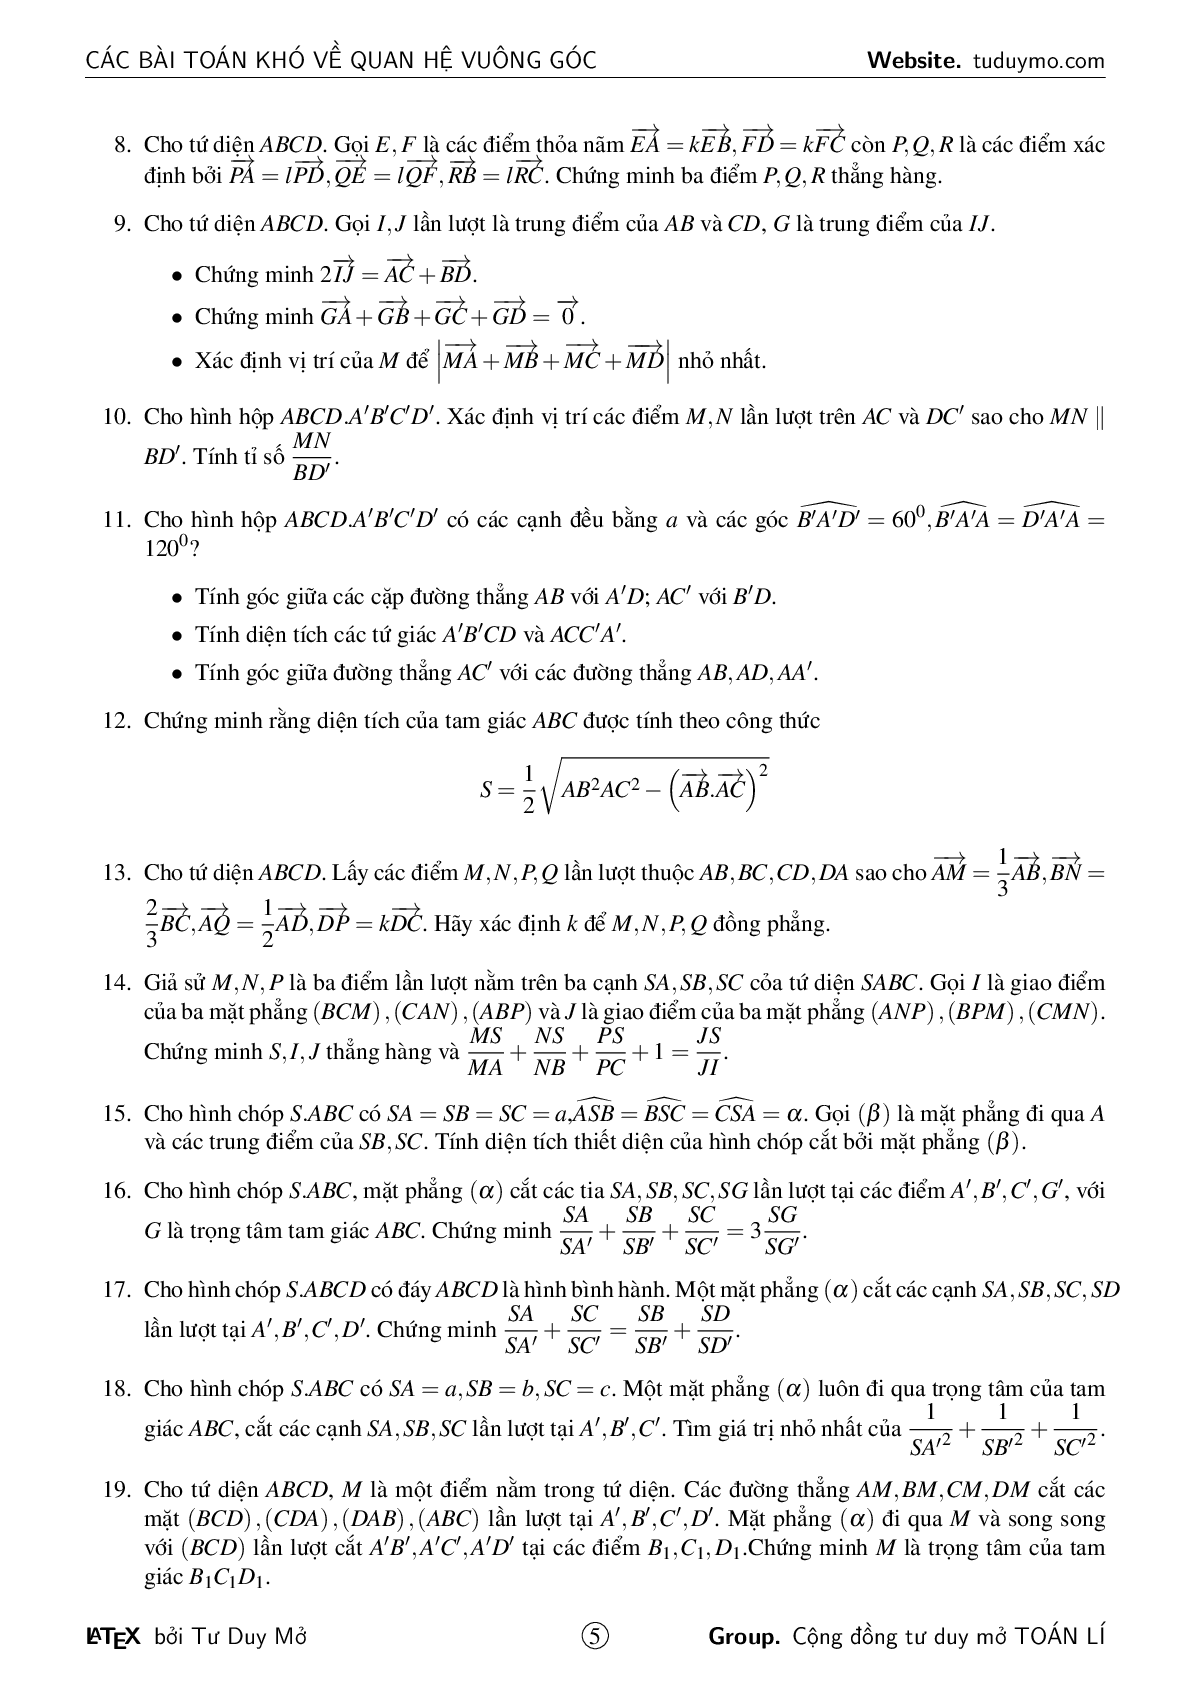 Các bài toán khó về quan hệ vuông góc (trang 5)